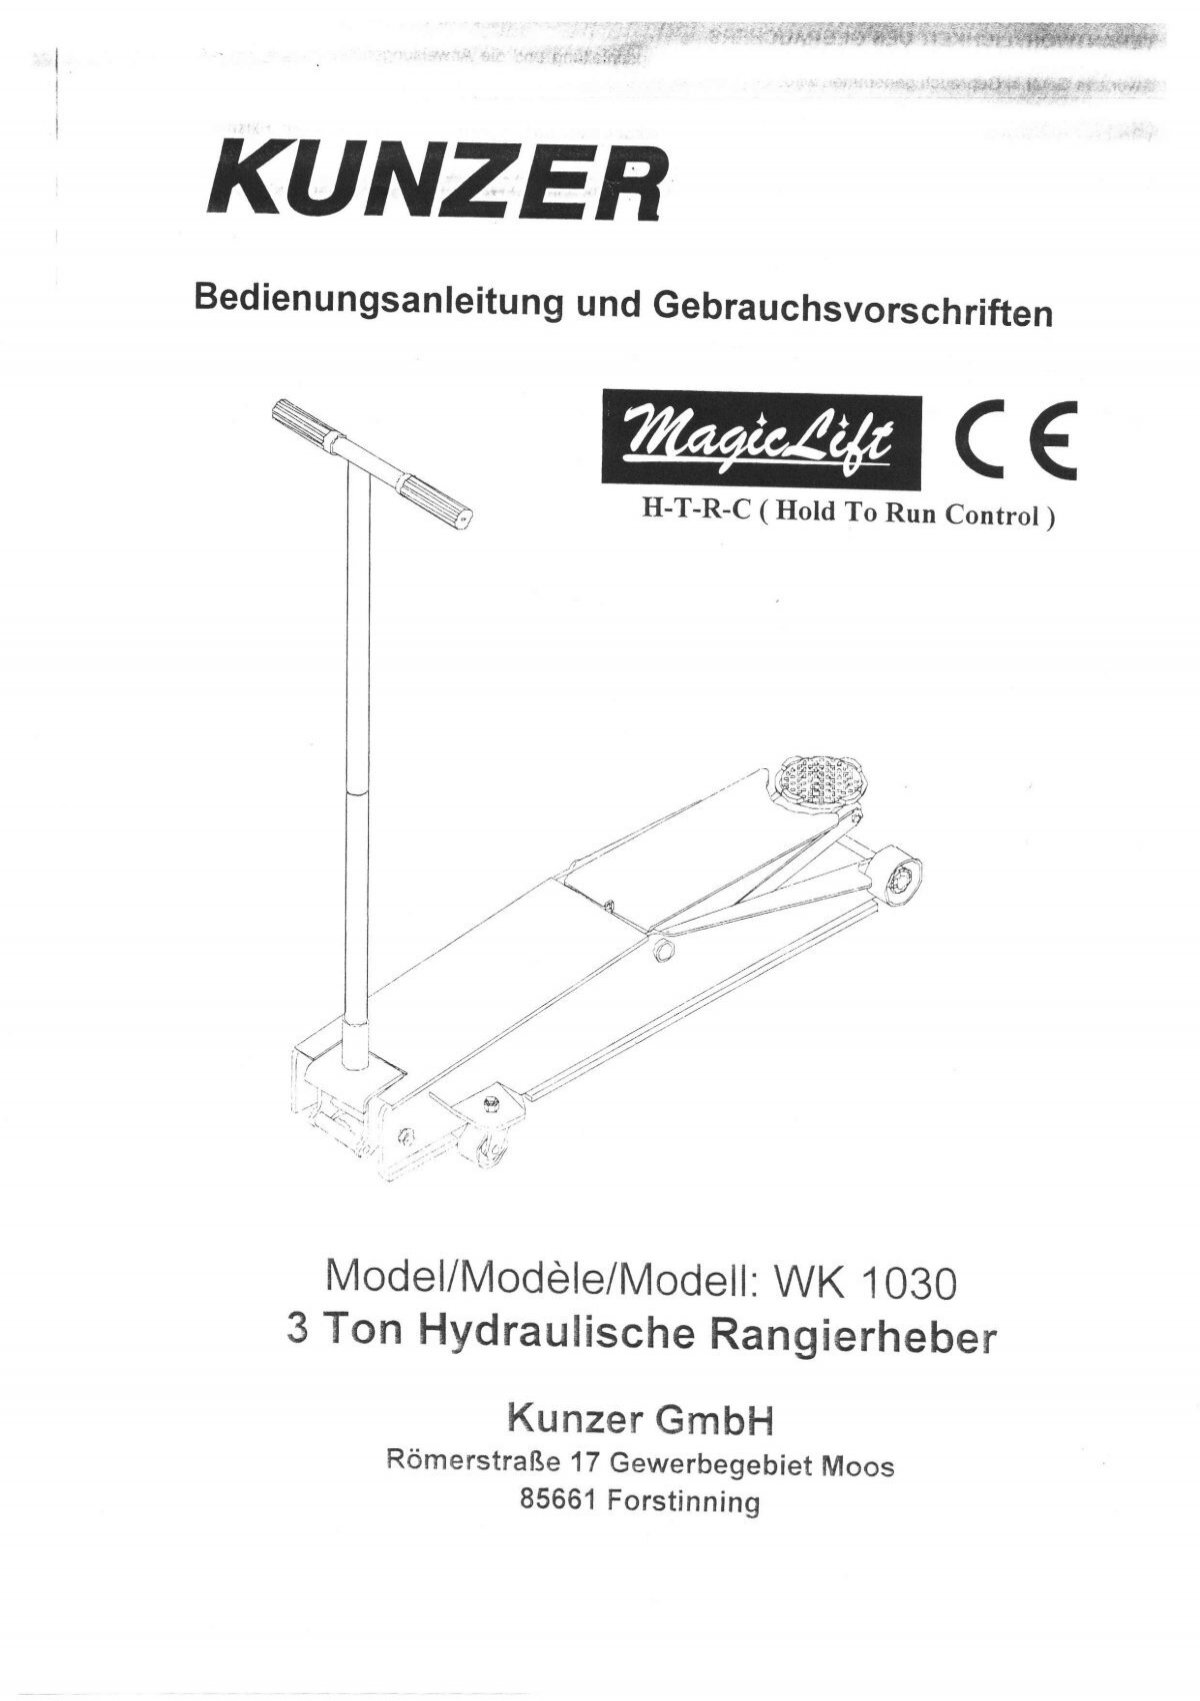 Bedienungsanleitung - KUNZER GmbH